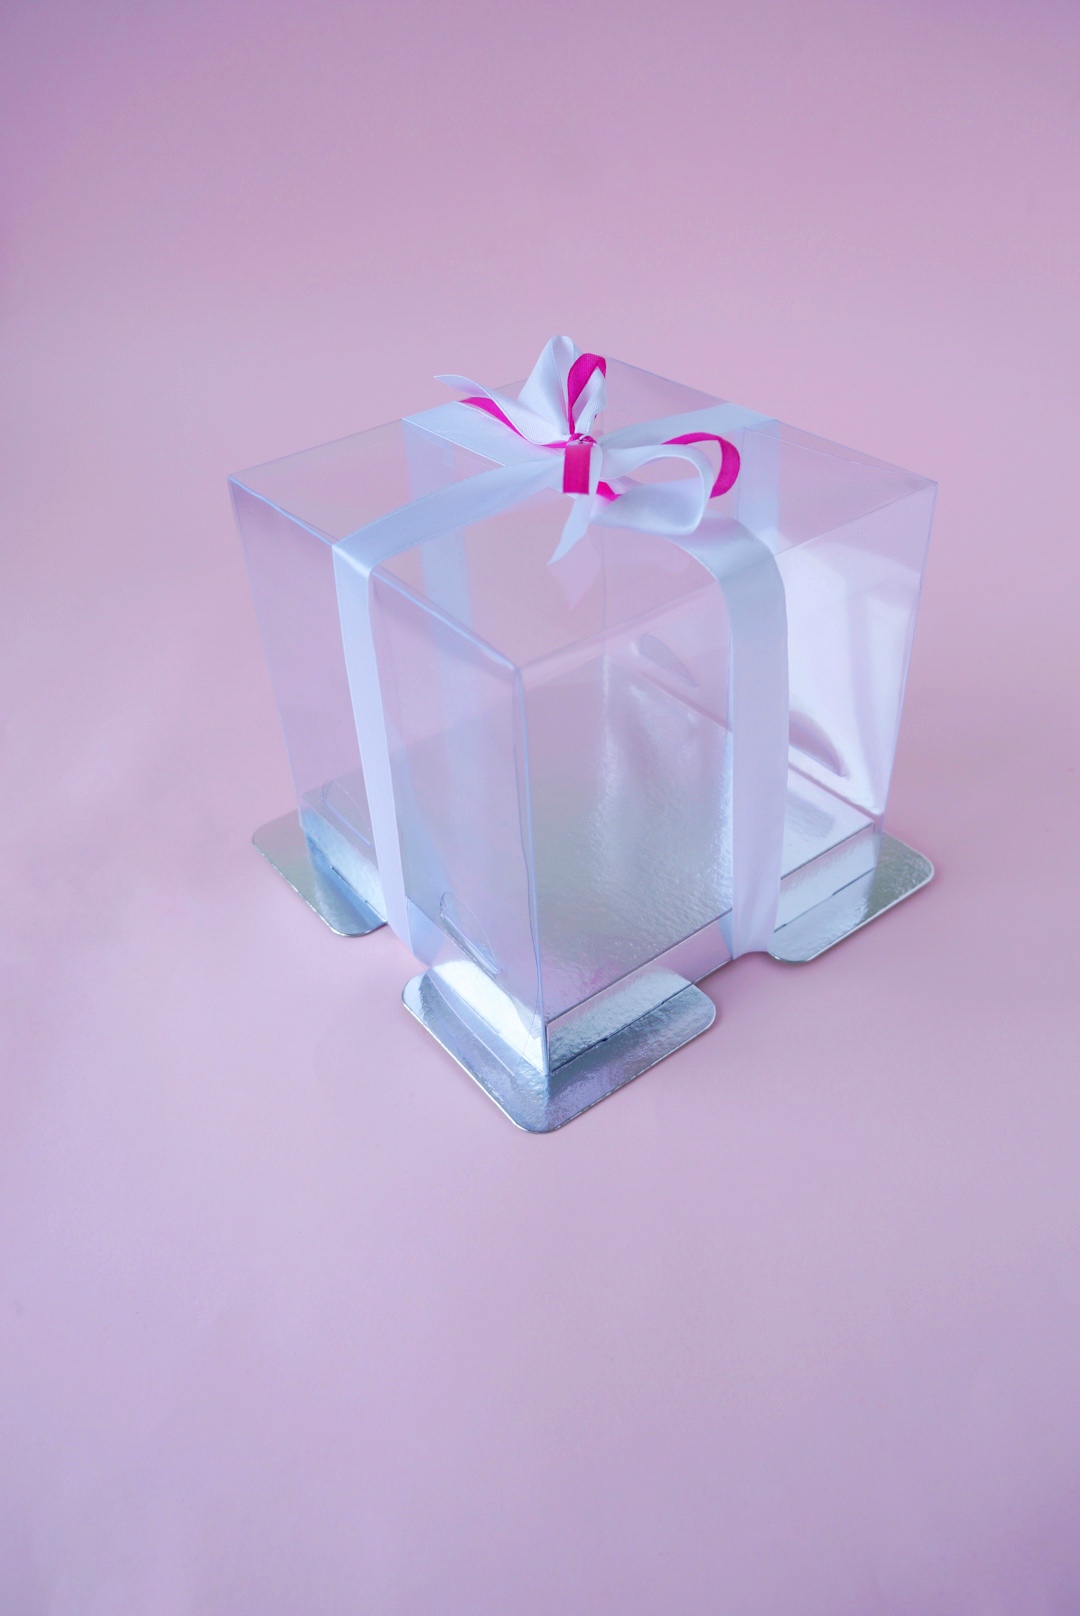 Коробка для торта прозрачная